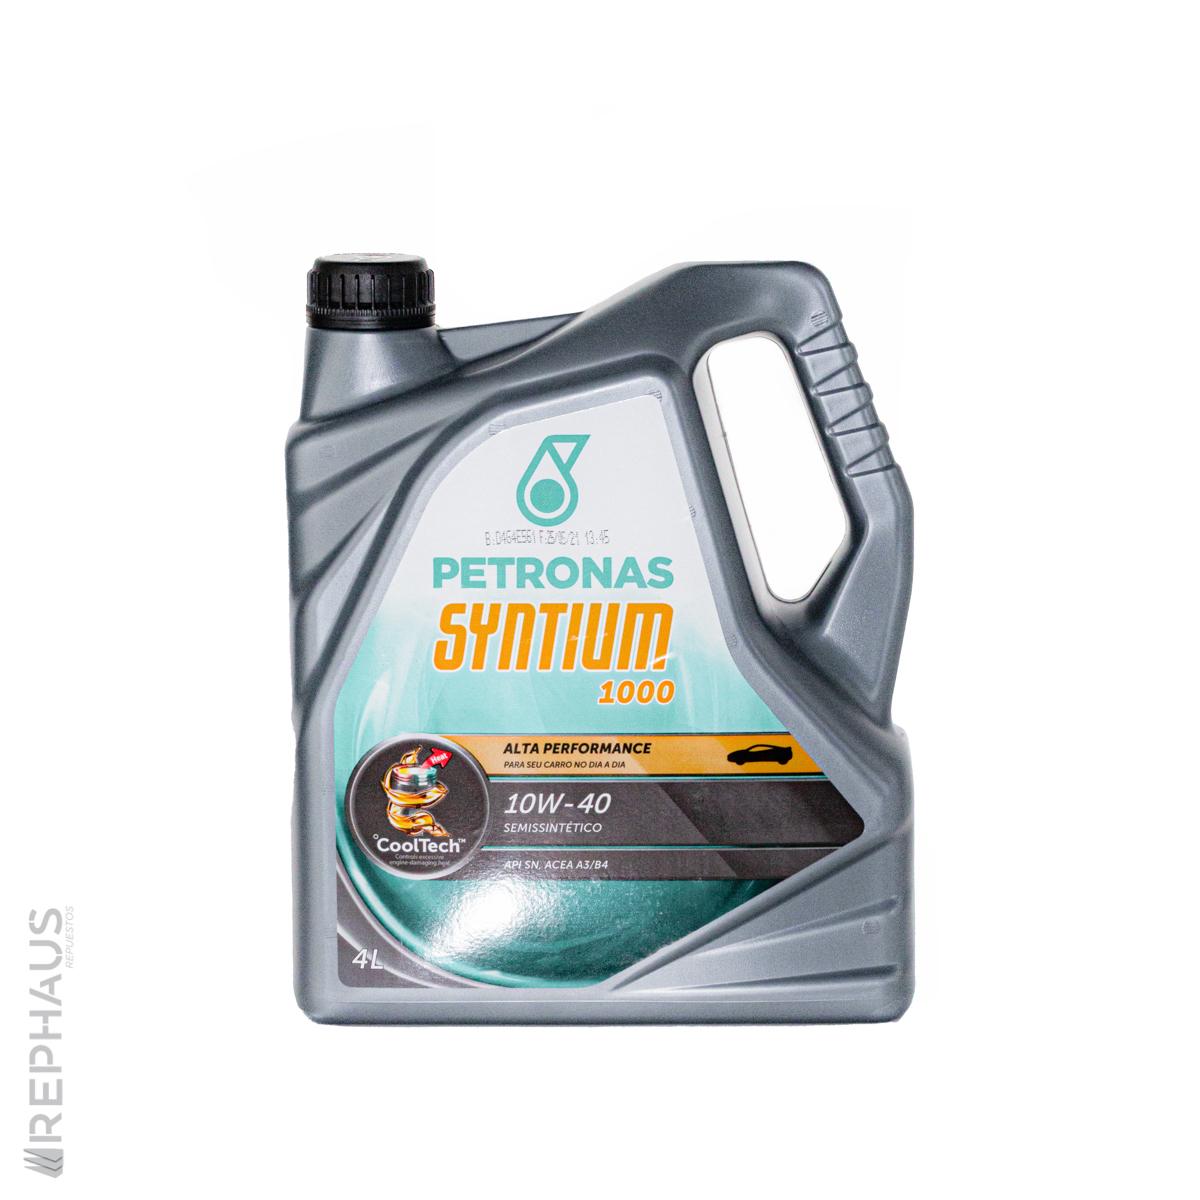 Aceite 10w40 Semi Sintético Petronas Syntium 1000 4 Lt – Rephaus Repuestos